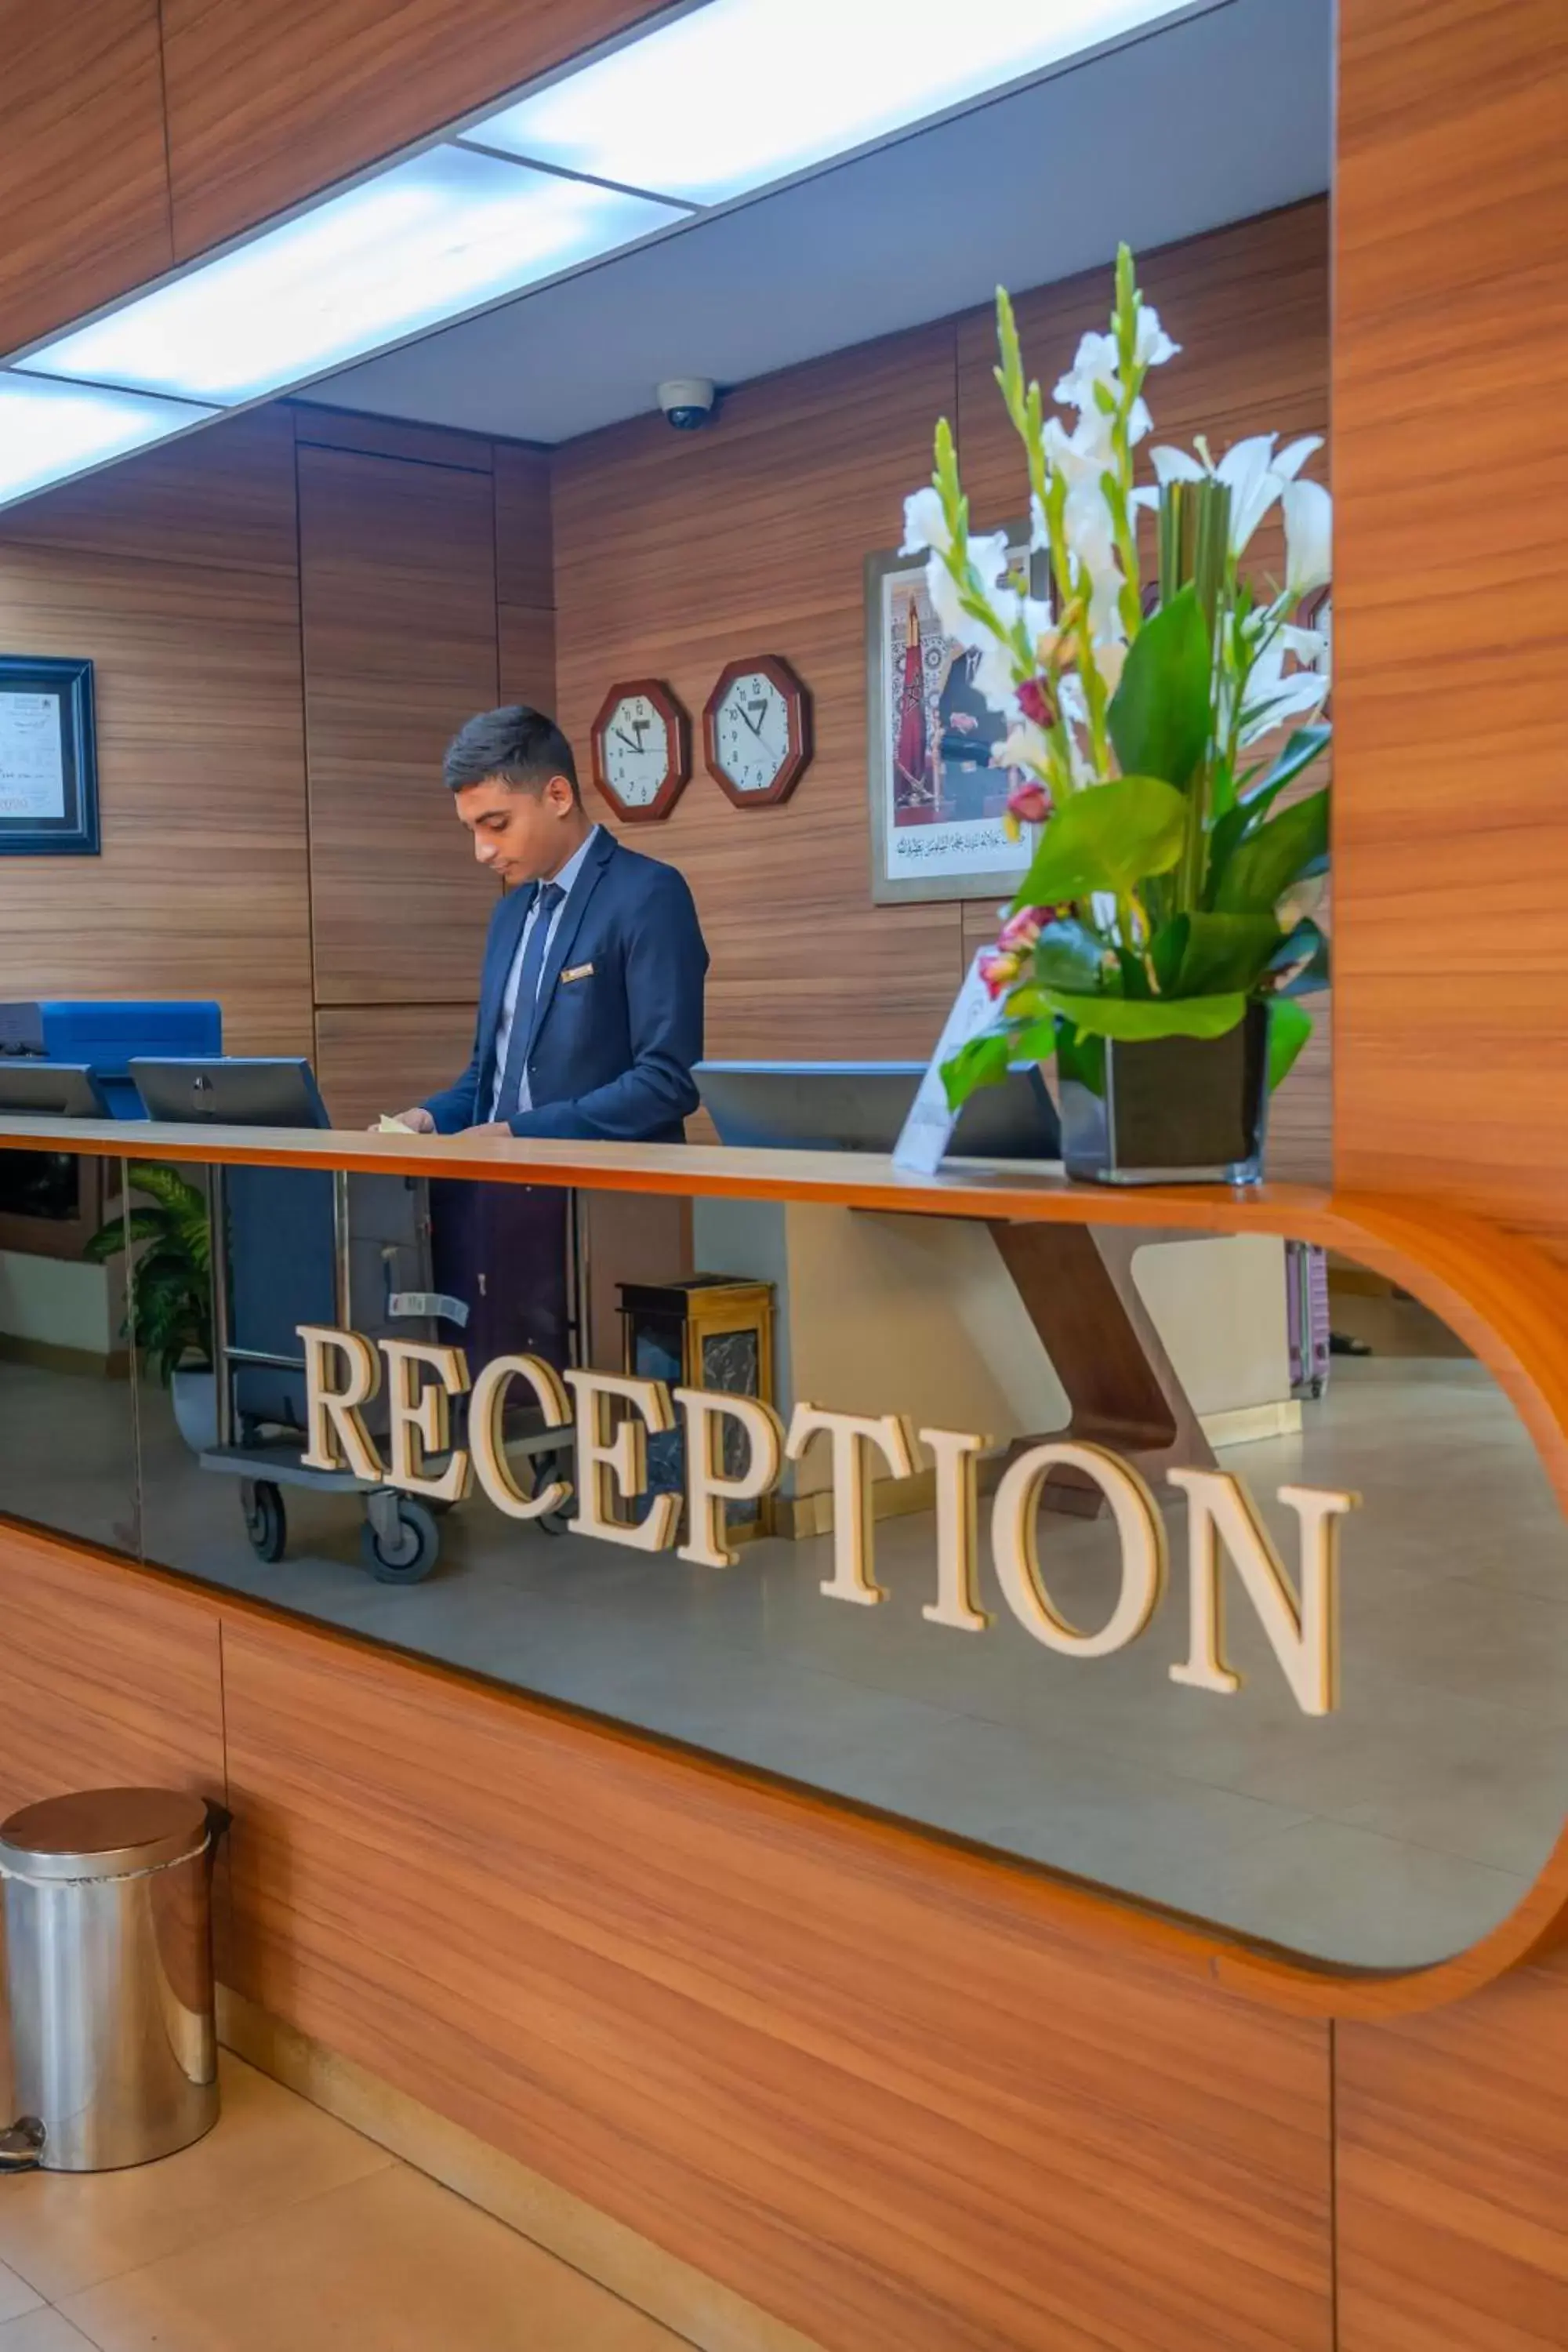 Lobby or reception in Kenzi Basma